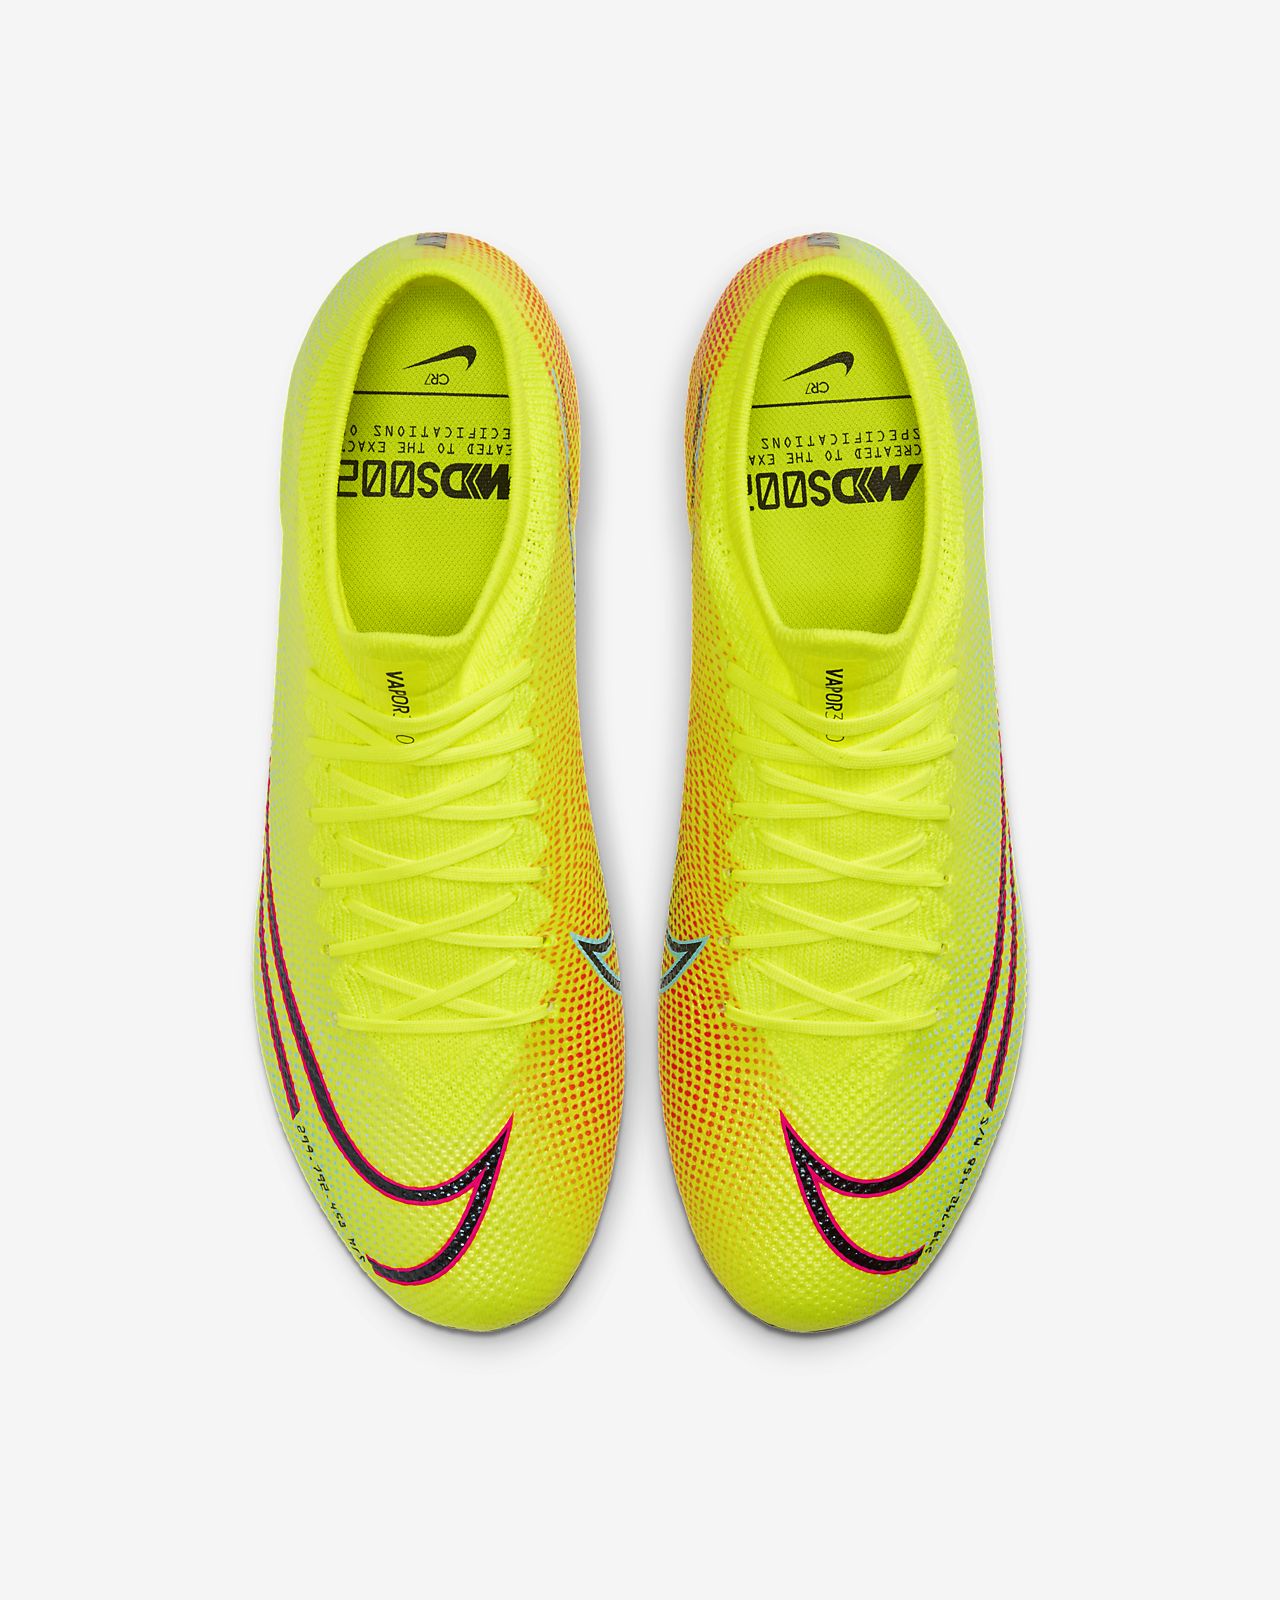 Nike Mercurial Vapor 13 Elite FG New Lights Pro Soccer Store